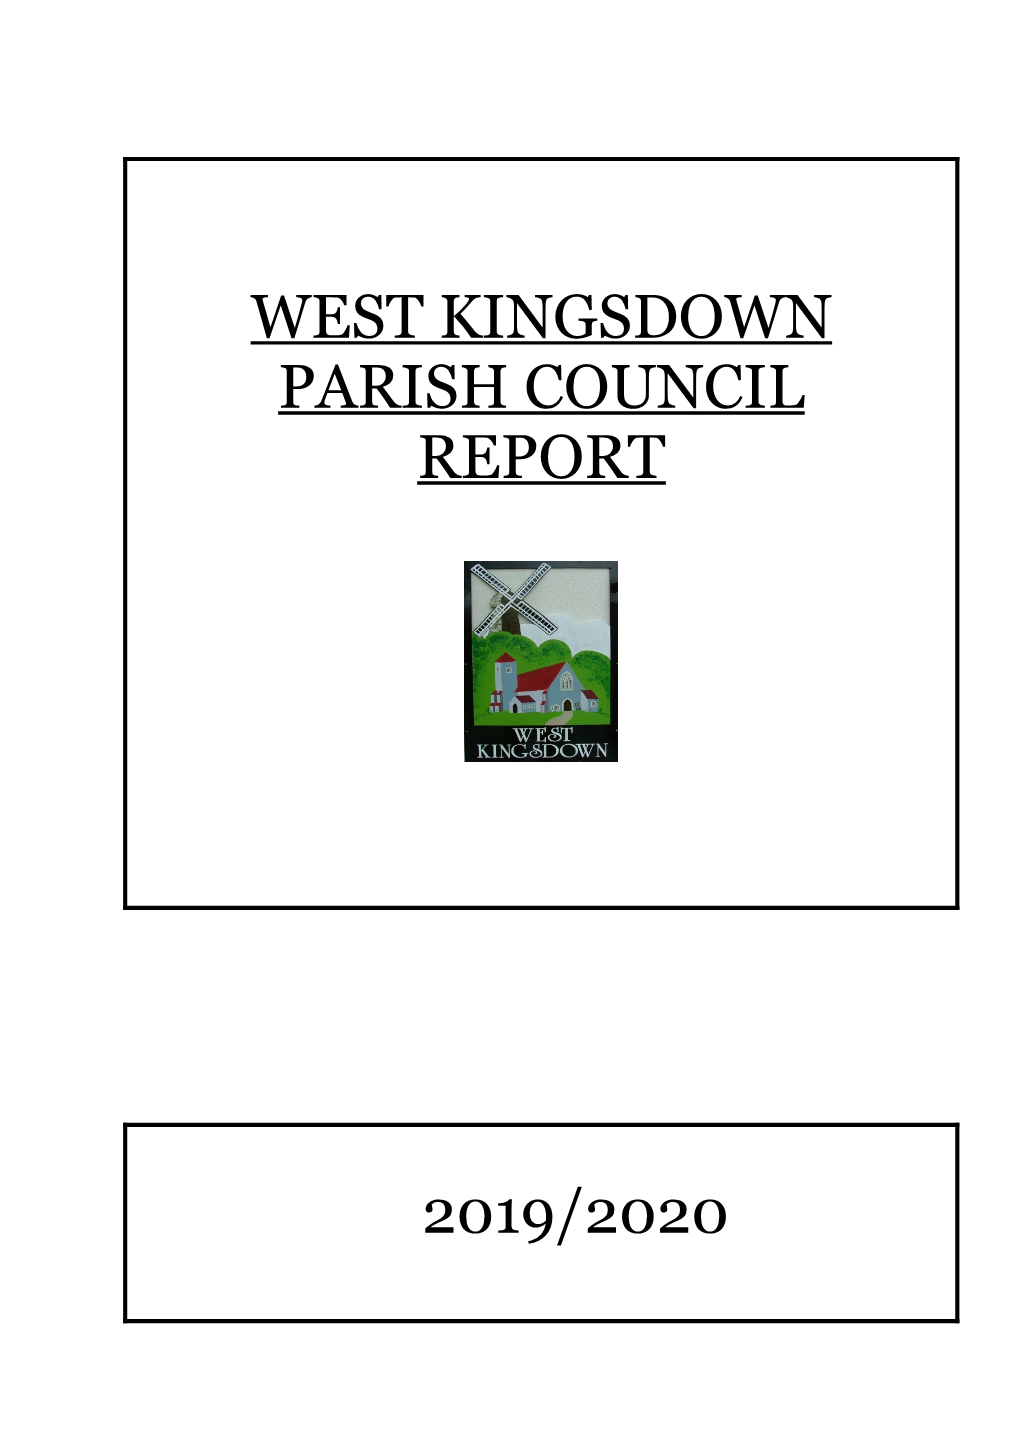 West Kingsdown Parish Council Report 2019/2020